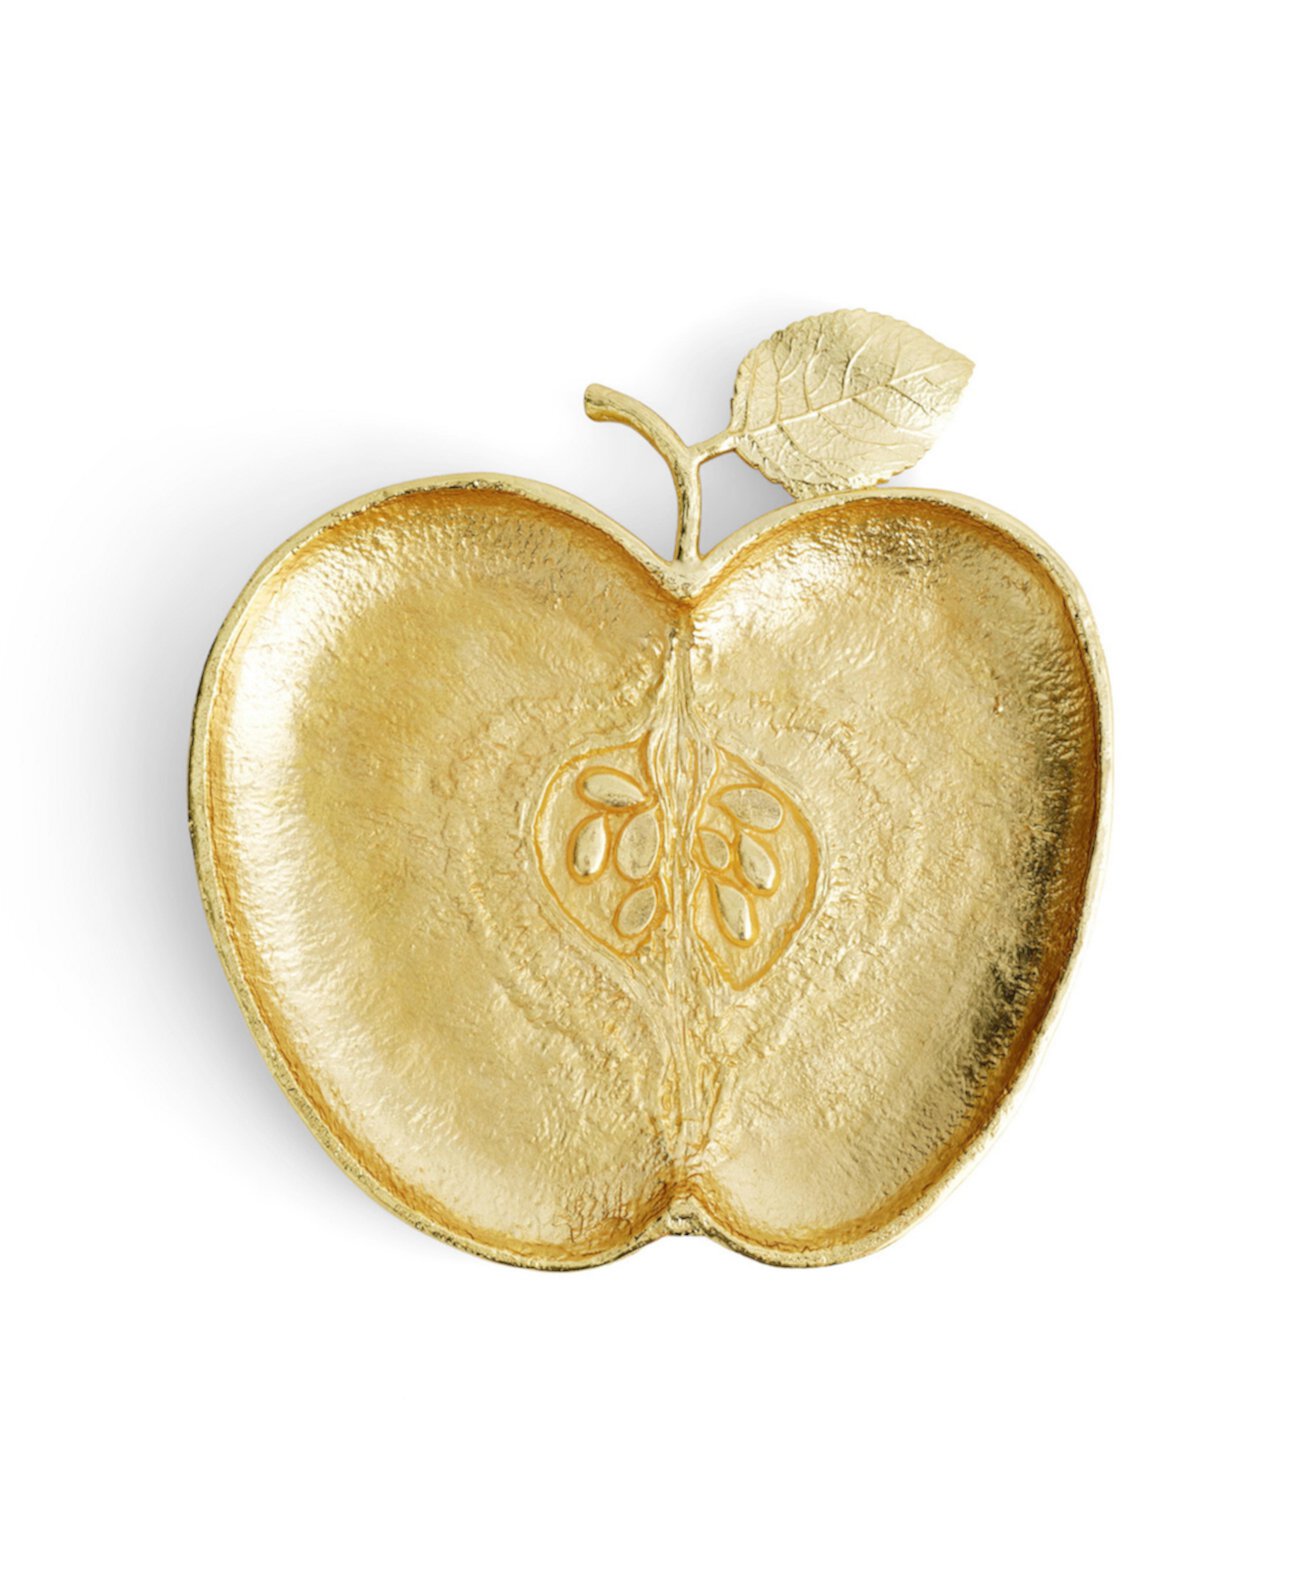 Золотая тарелка яблока MICHAEL ARAM